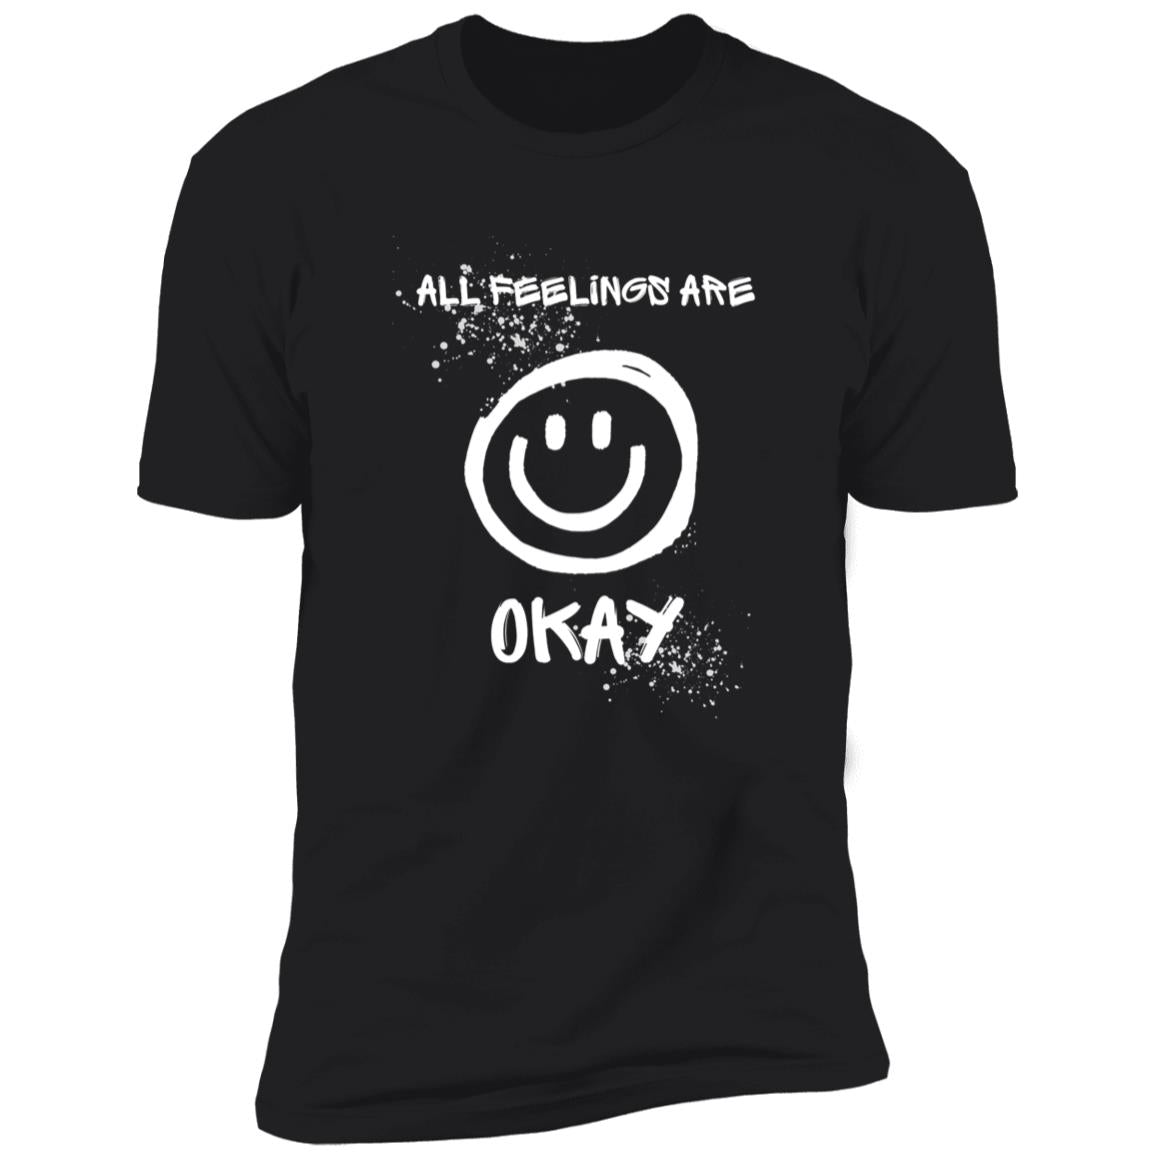 All Feelings Are OK T-Shirt